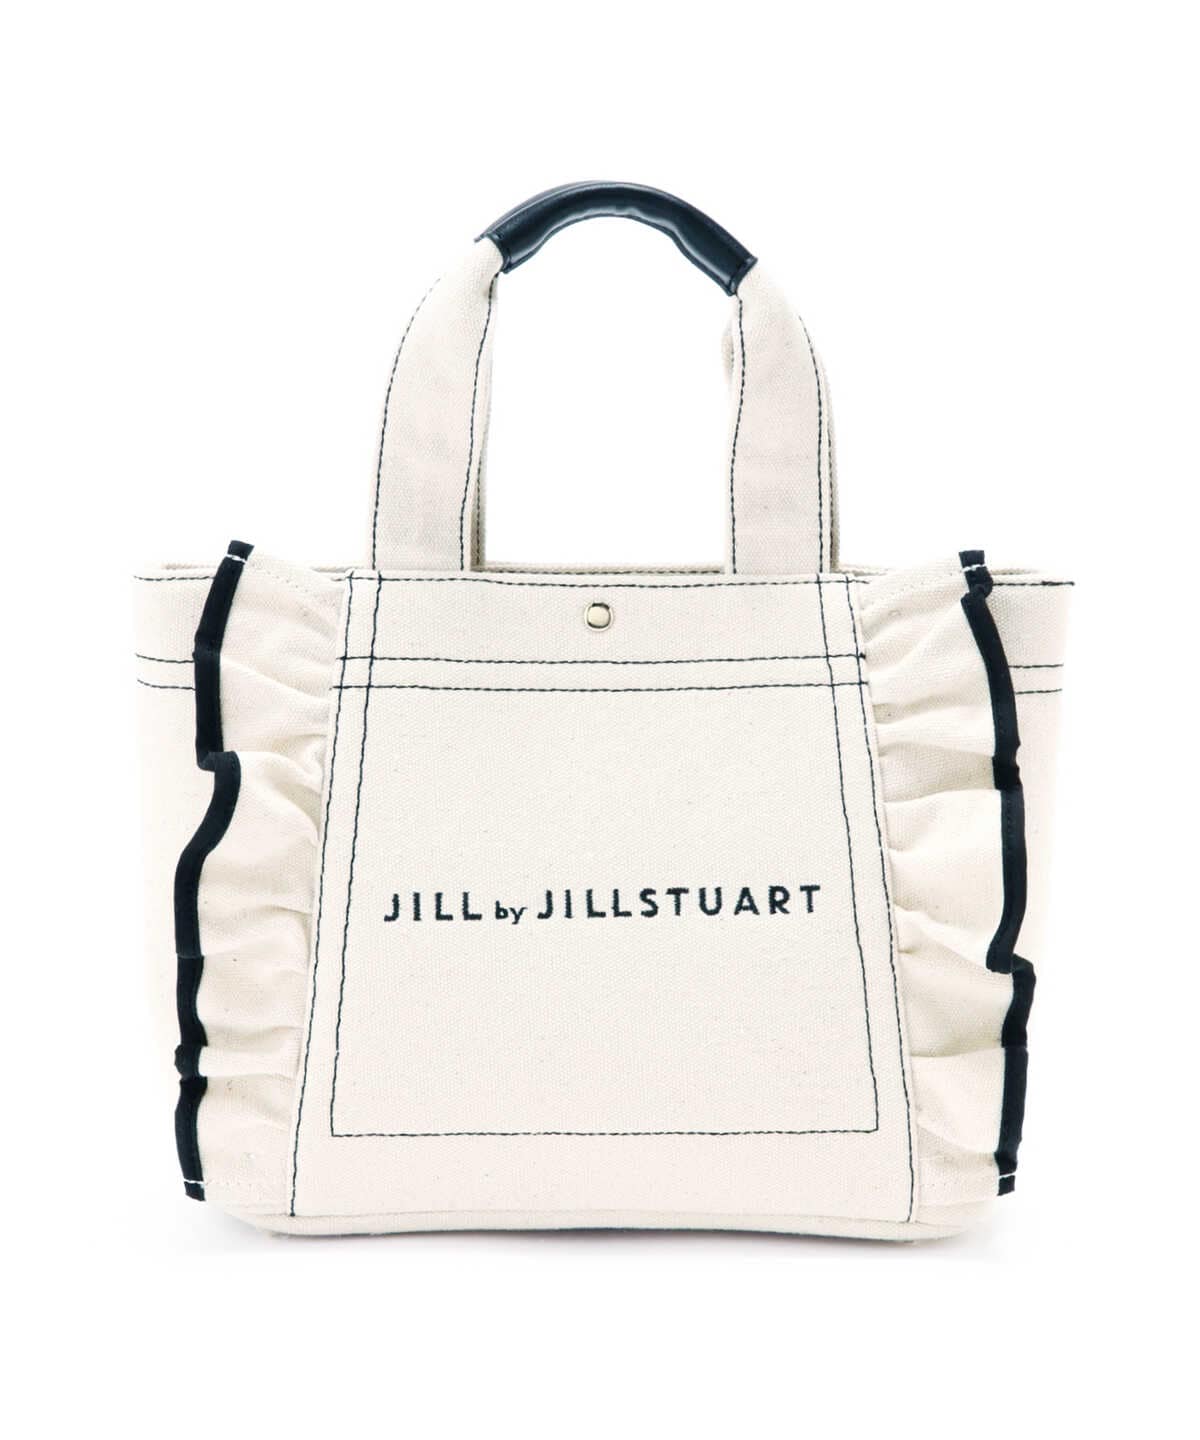 JILL by JILLSTUART